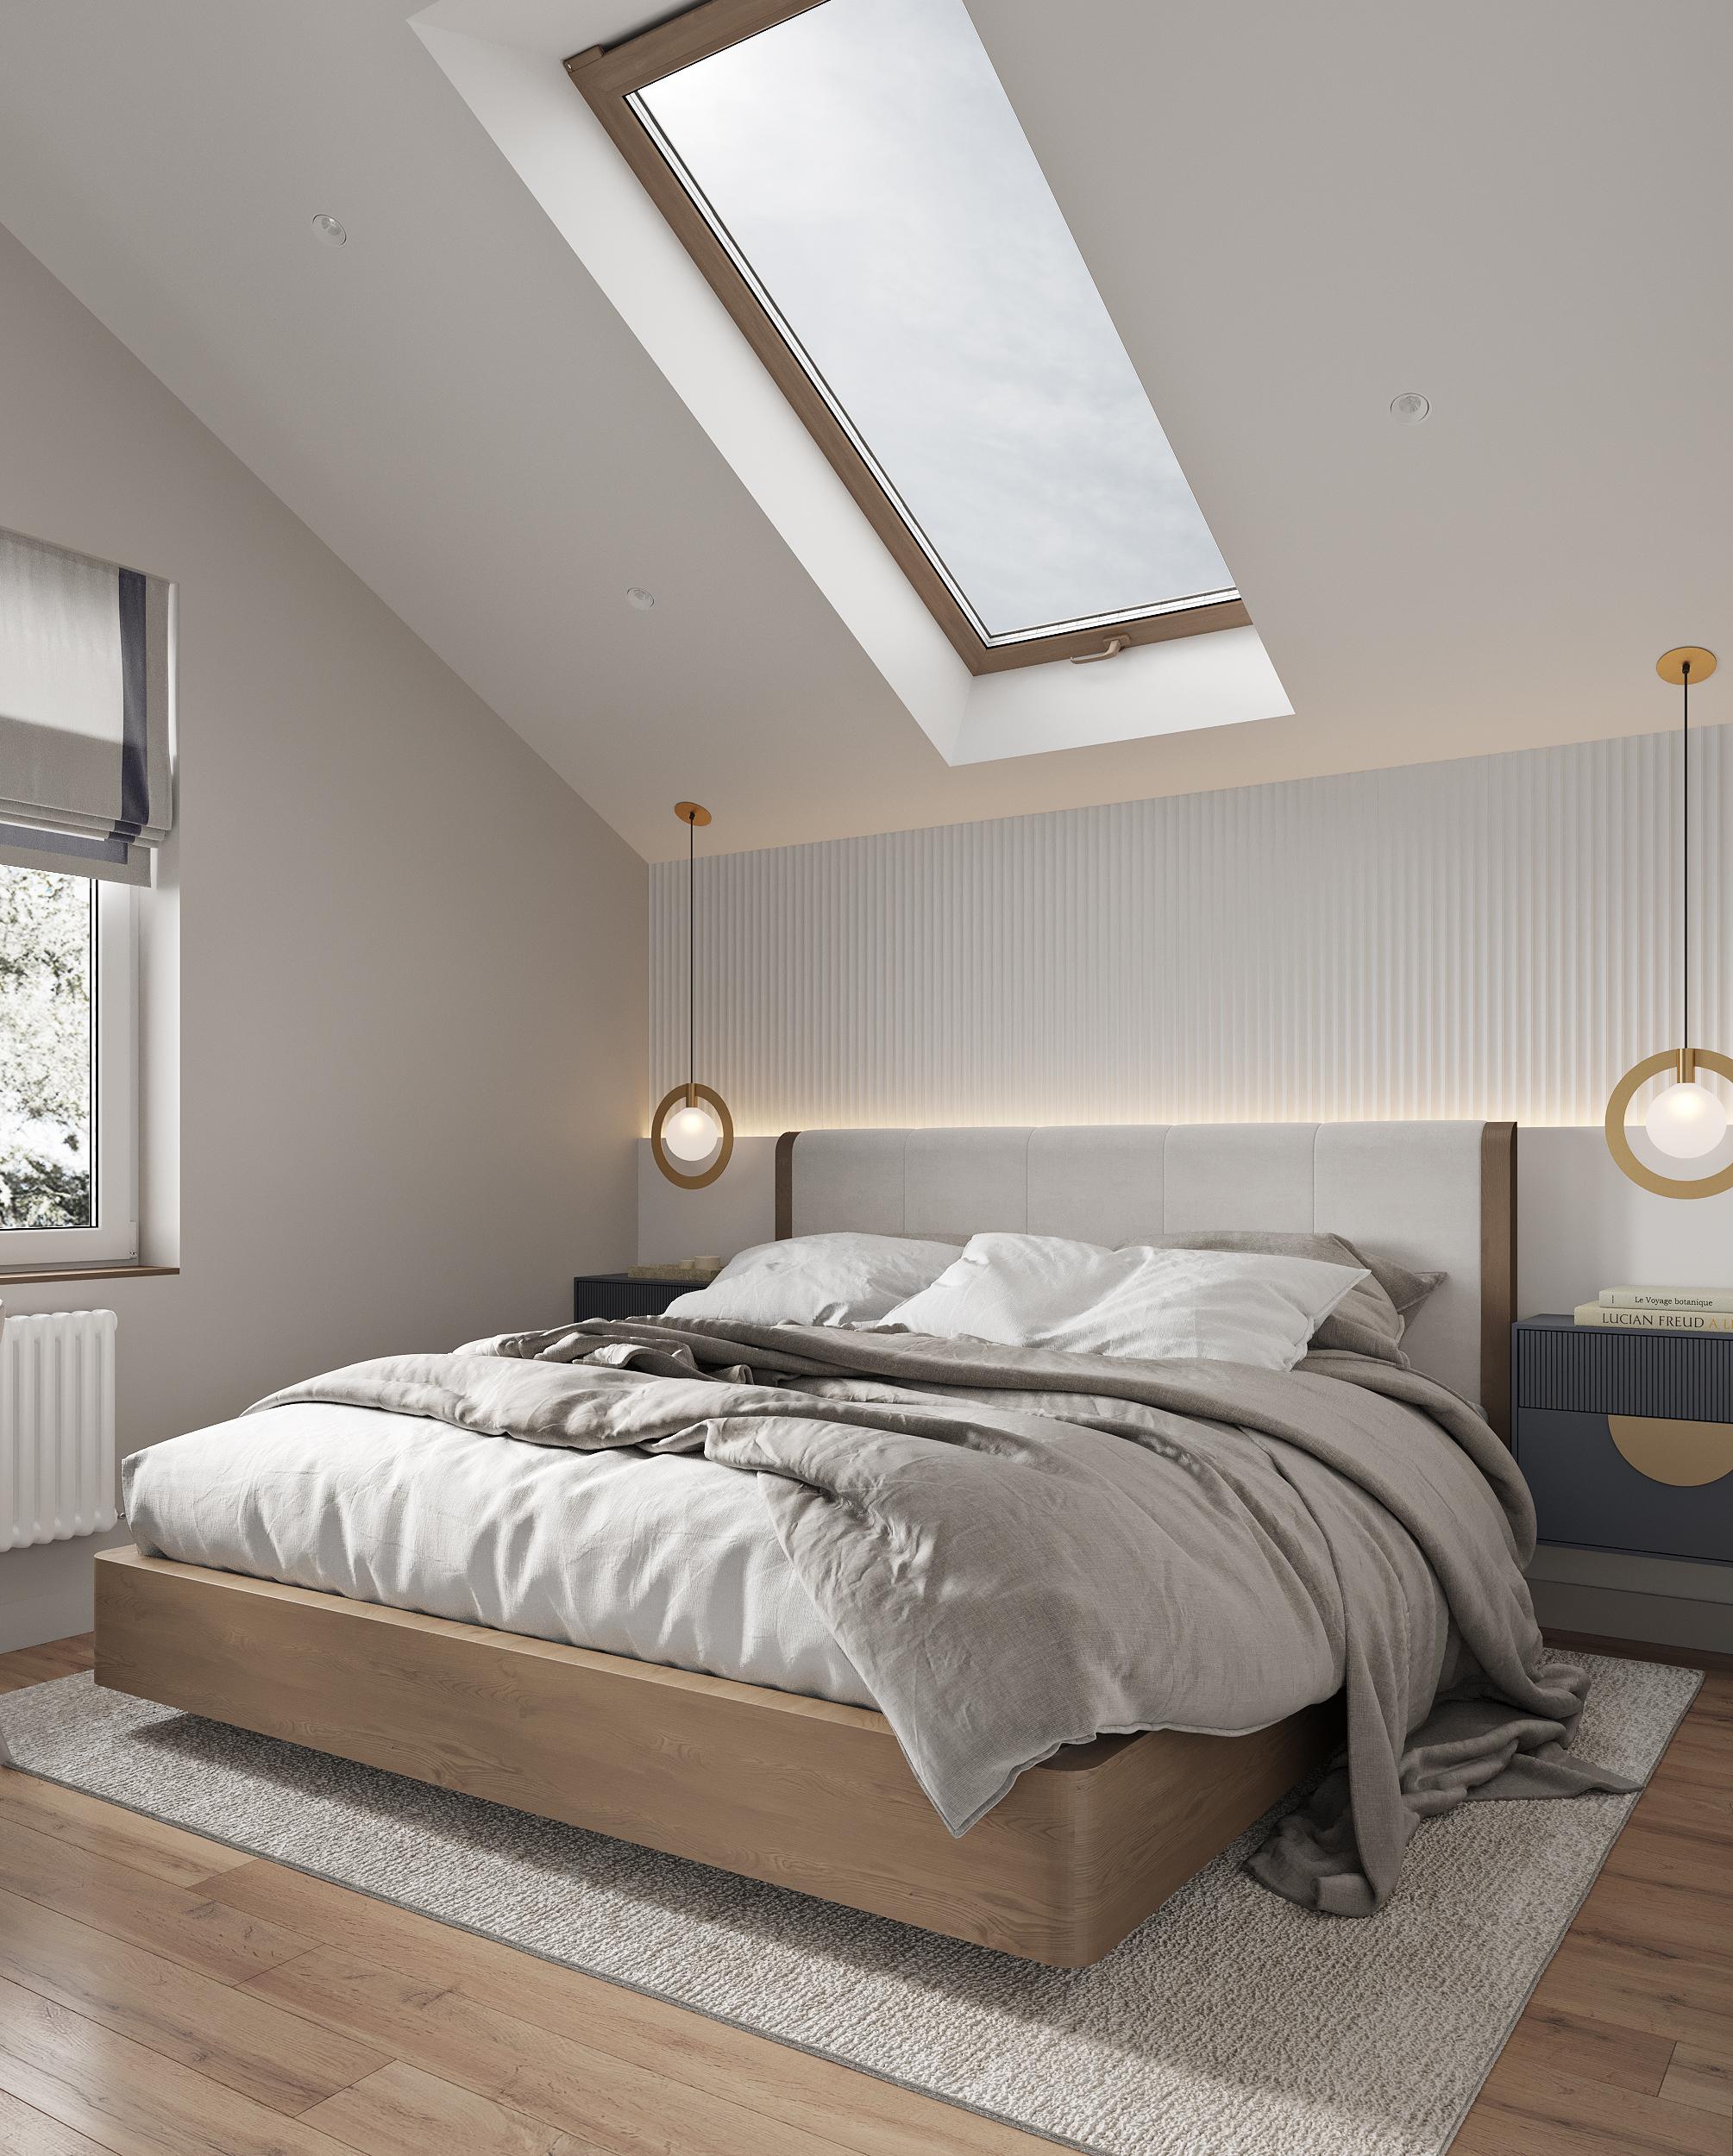 Интерьер спальни с окном, световыми линиями и светильниками над кроватью в стиле лофт